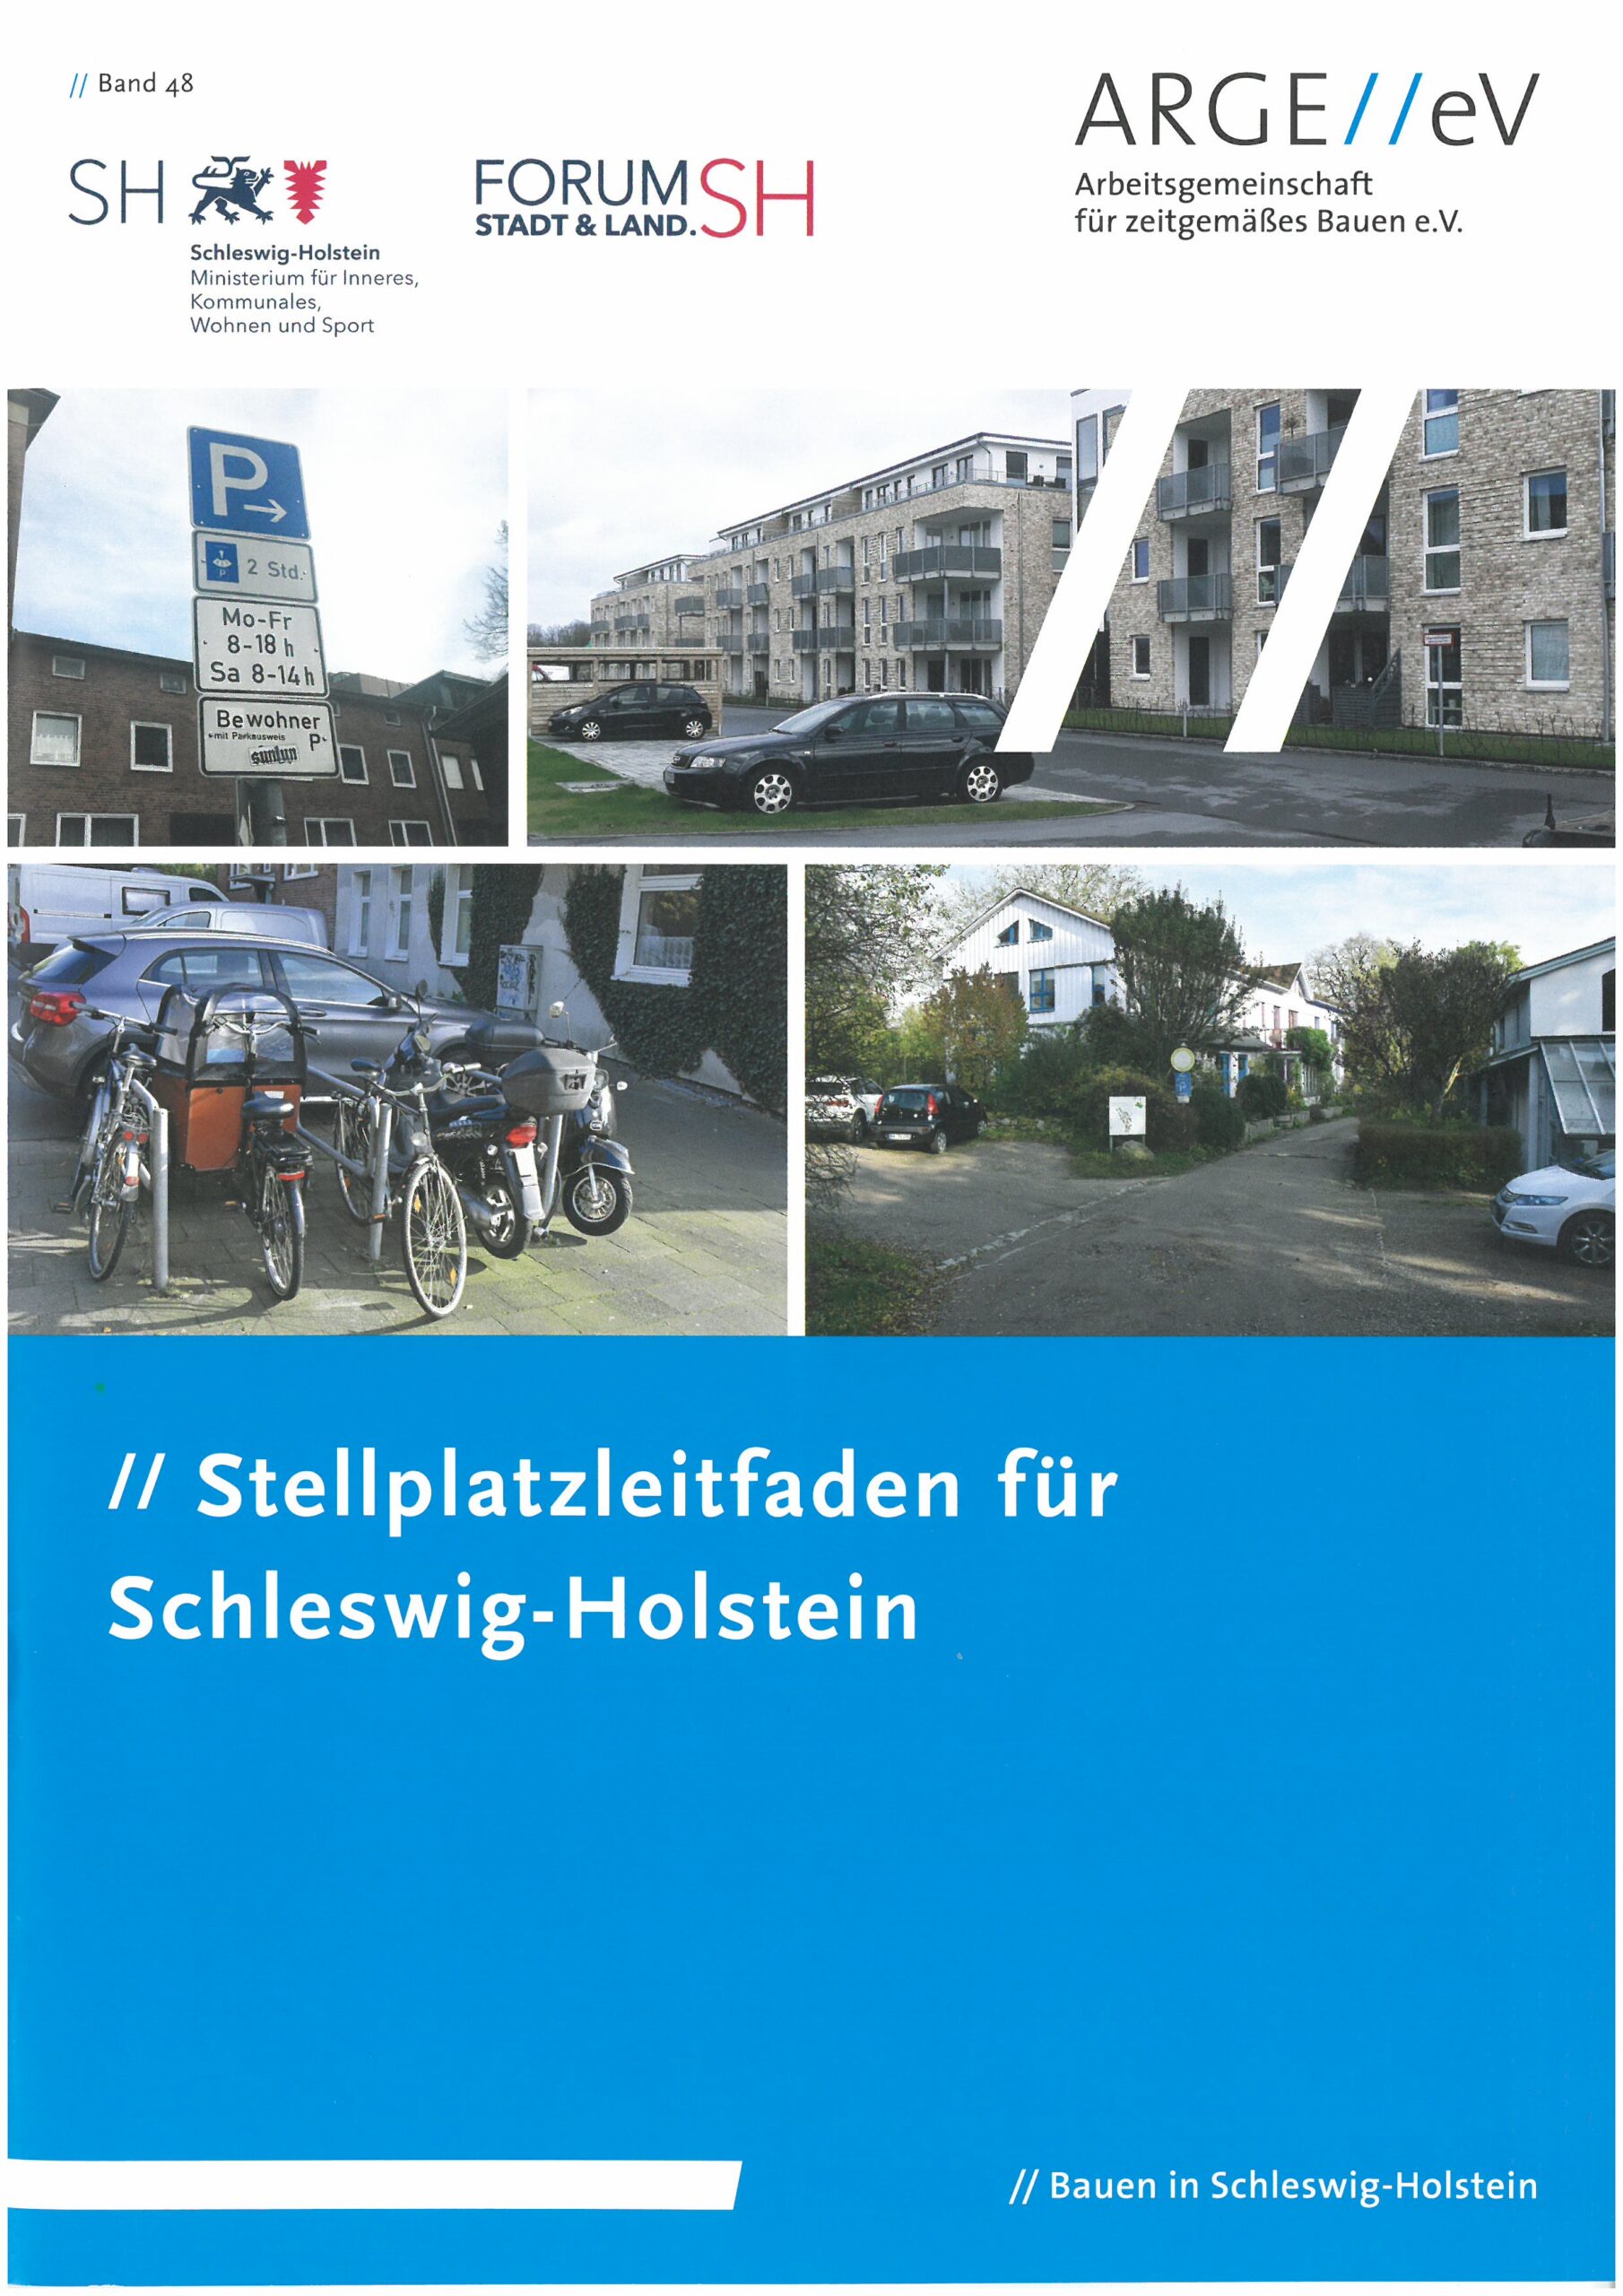 Sellplatzleitfaden für Schleswig-Holstein